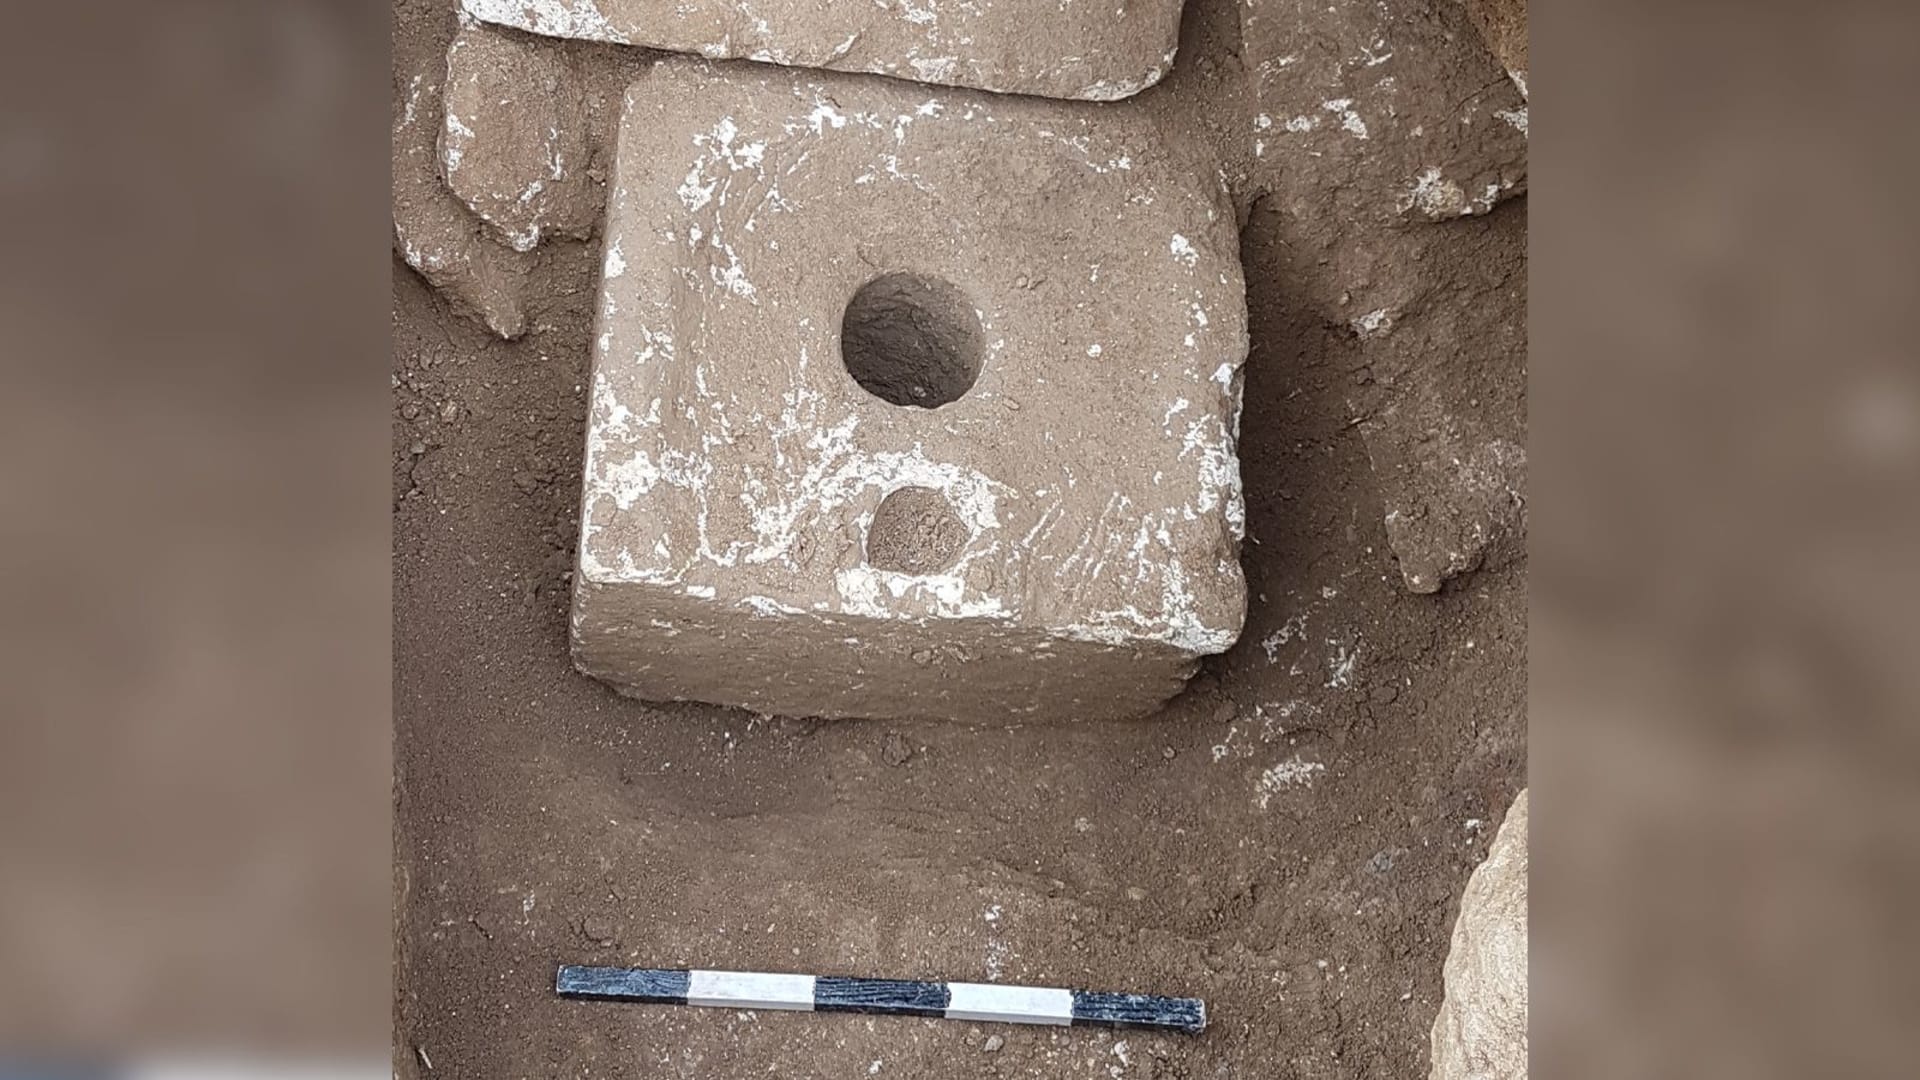 Obyvatelé přelidněného Jeruzaléma byli ve starověku snadným a častým terčem infekční úplavice, zjistili vědci z 2500 let starých záchodů